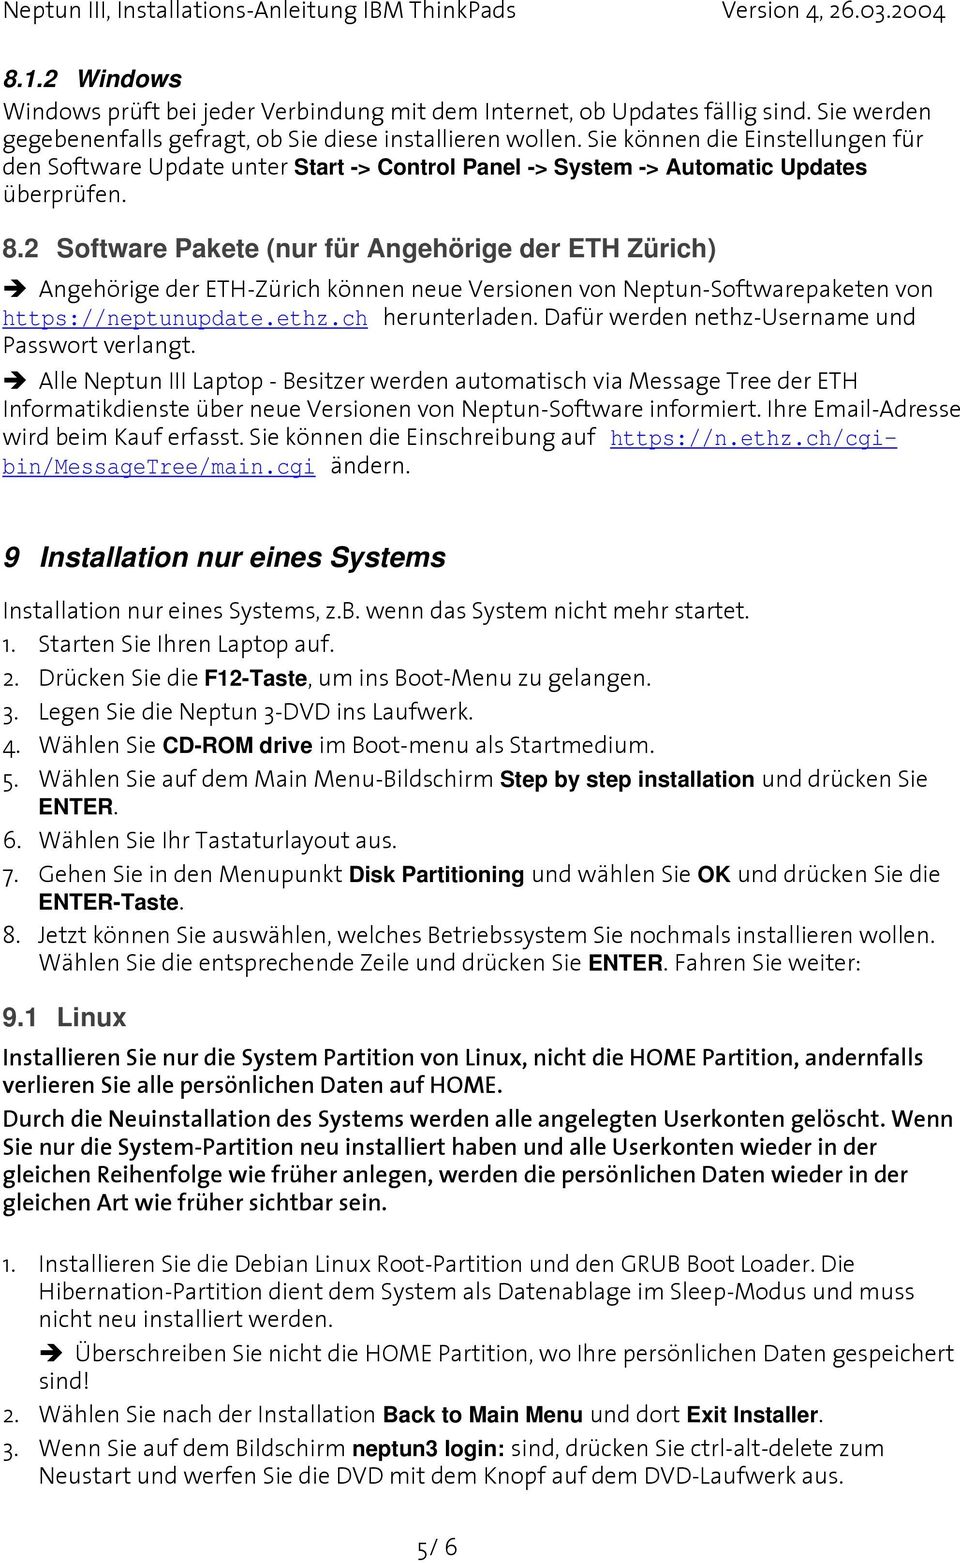 2 Software Pakete (nur für Angehörige der ETH Zürich) Angehörige der ETH-Zürich können neue Versionen von Neptun-Softwarepaketen von https://neptunupdate.ethz.ch herunterladen.